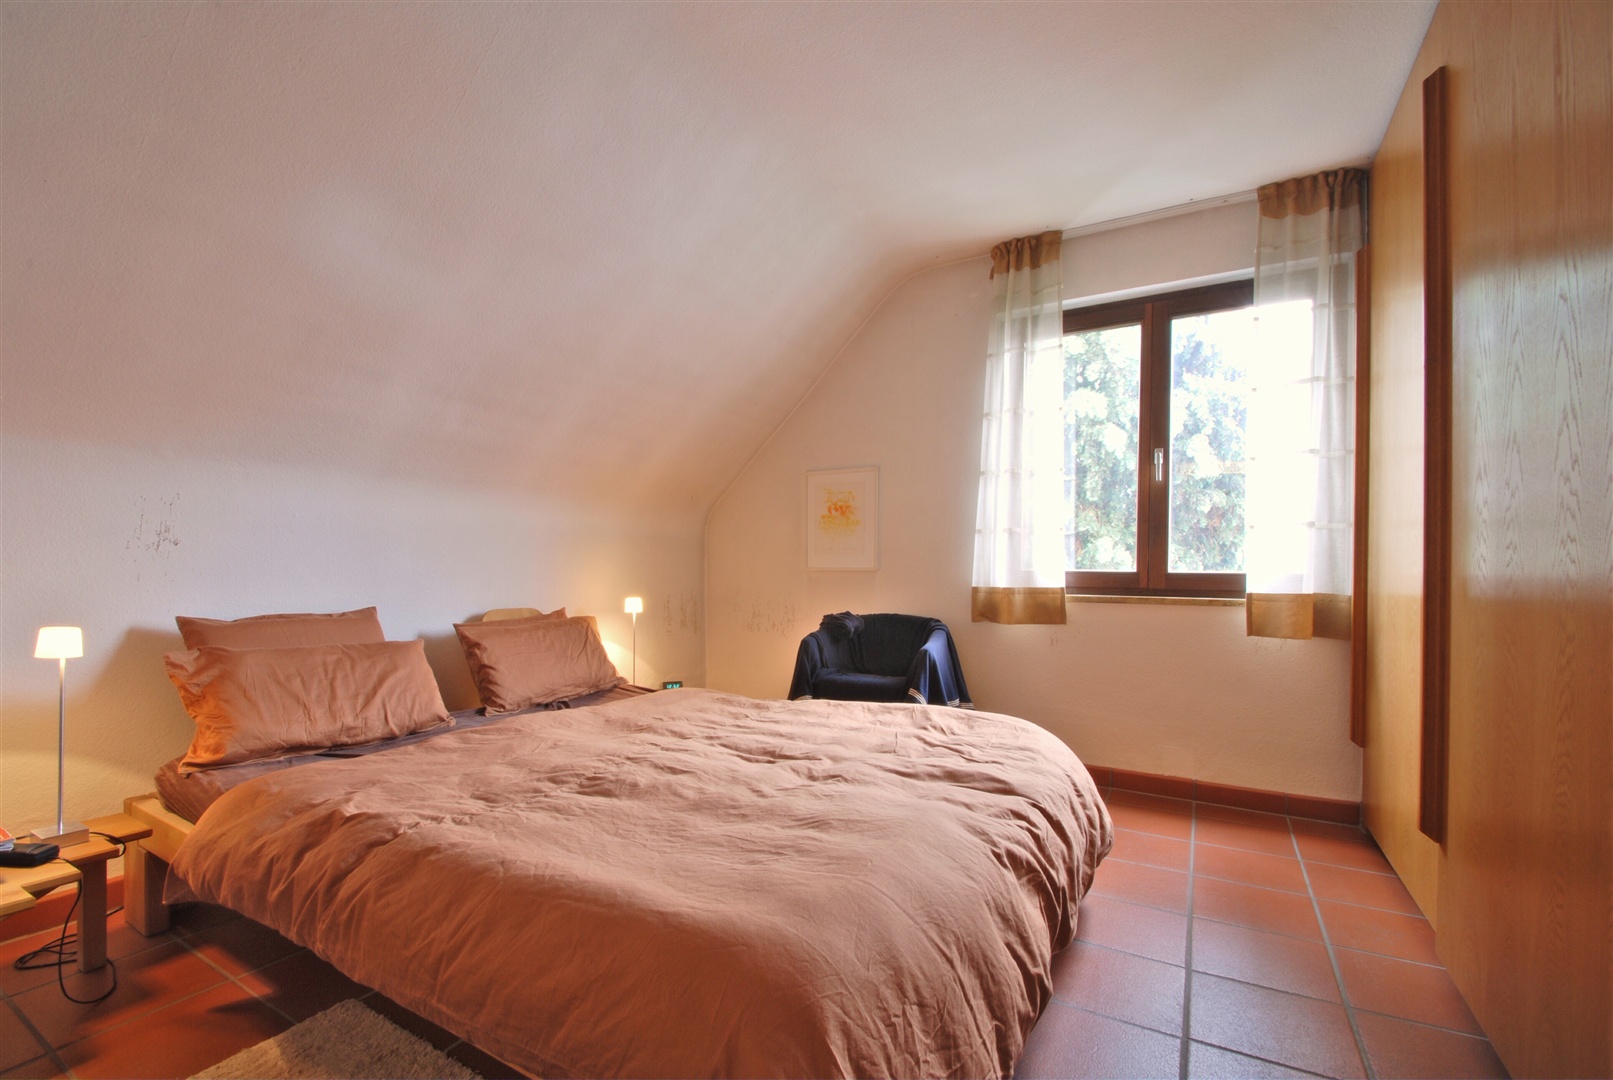 Elternschlafzimmer im OG mit Platz für einen großen Einbauschrank (nicht inkl.) - Oliver Reifferscheid - Immobilienmakler Darmstadt